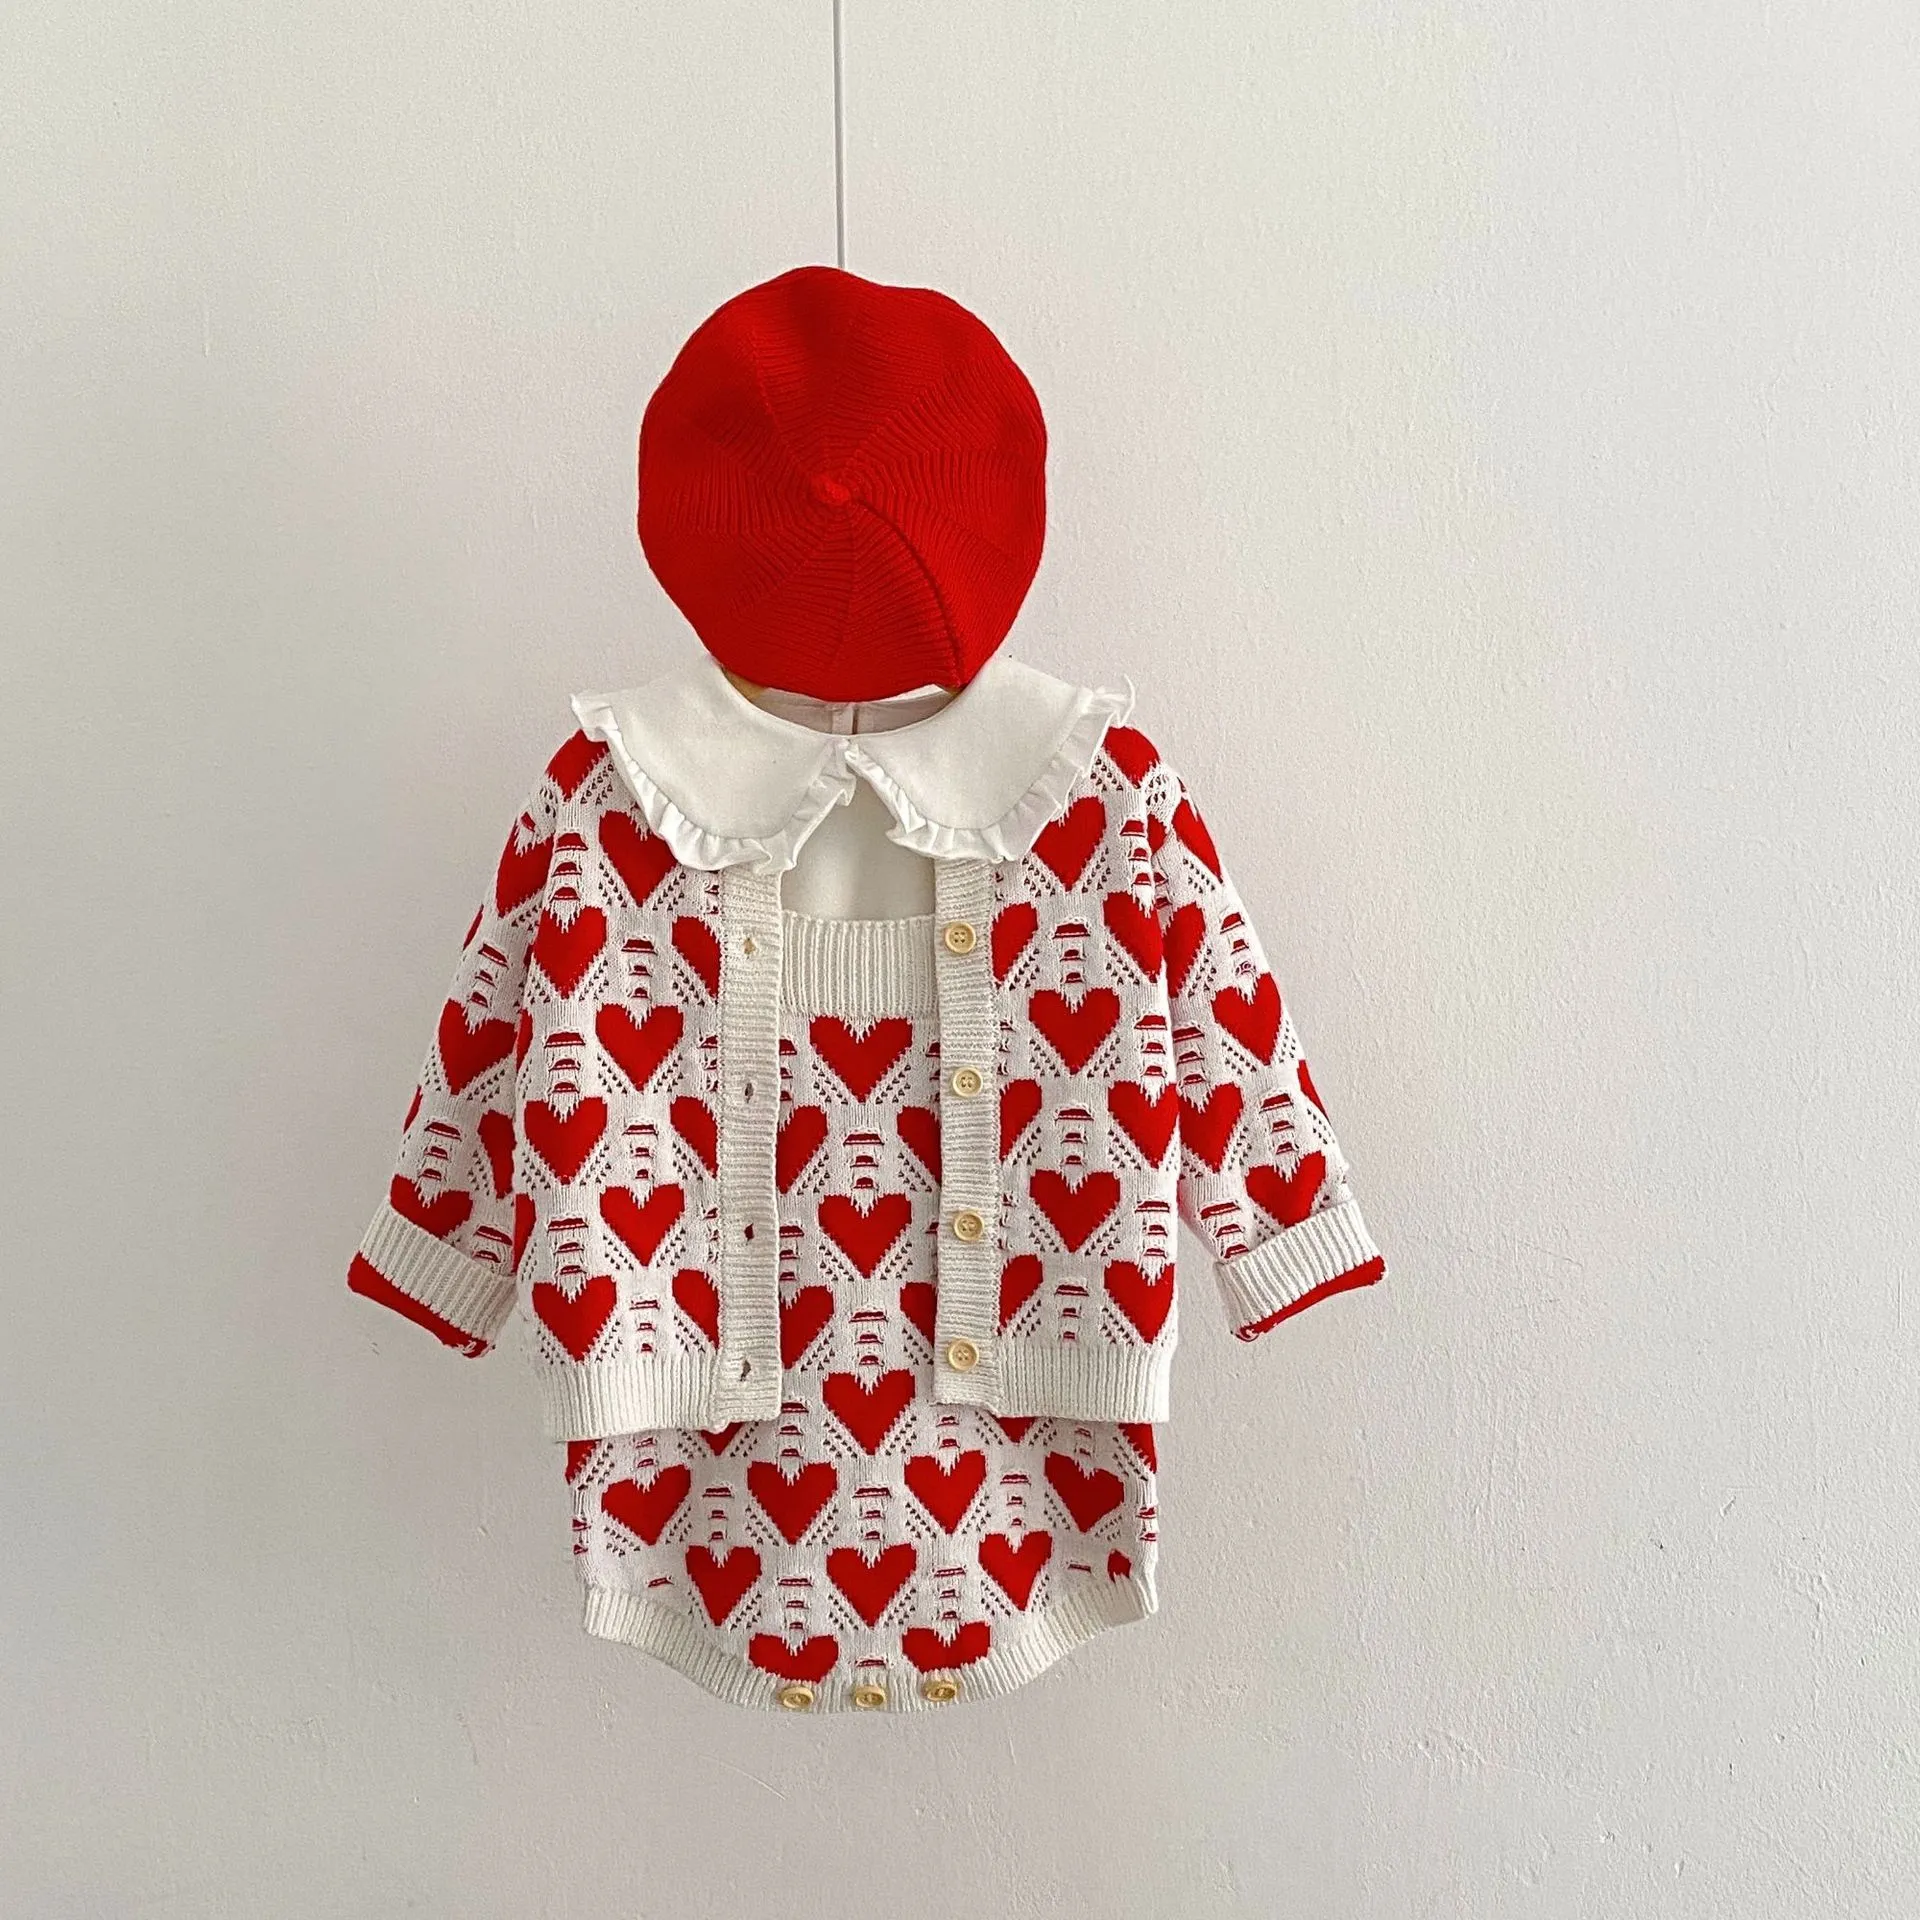 Ins urocze wiosenne jesienne dzianiny Zestawy odzieży Dzieci Red Redeve Red Love Heart Cardigan Romper Ubrania dziecięce 100% bawełny